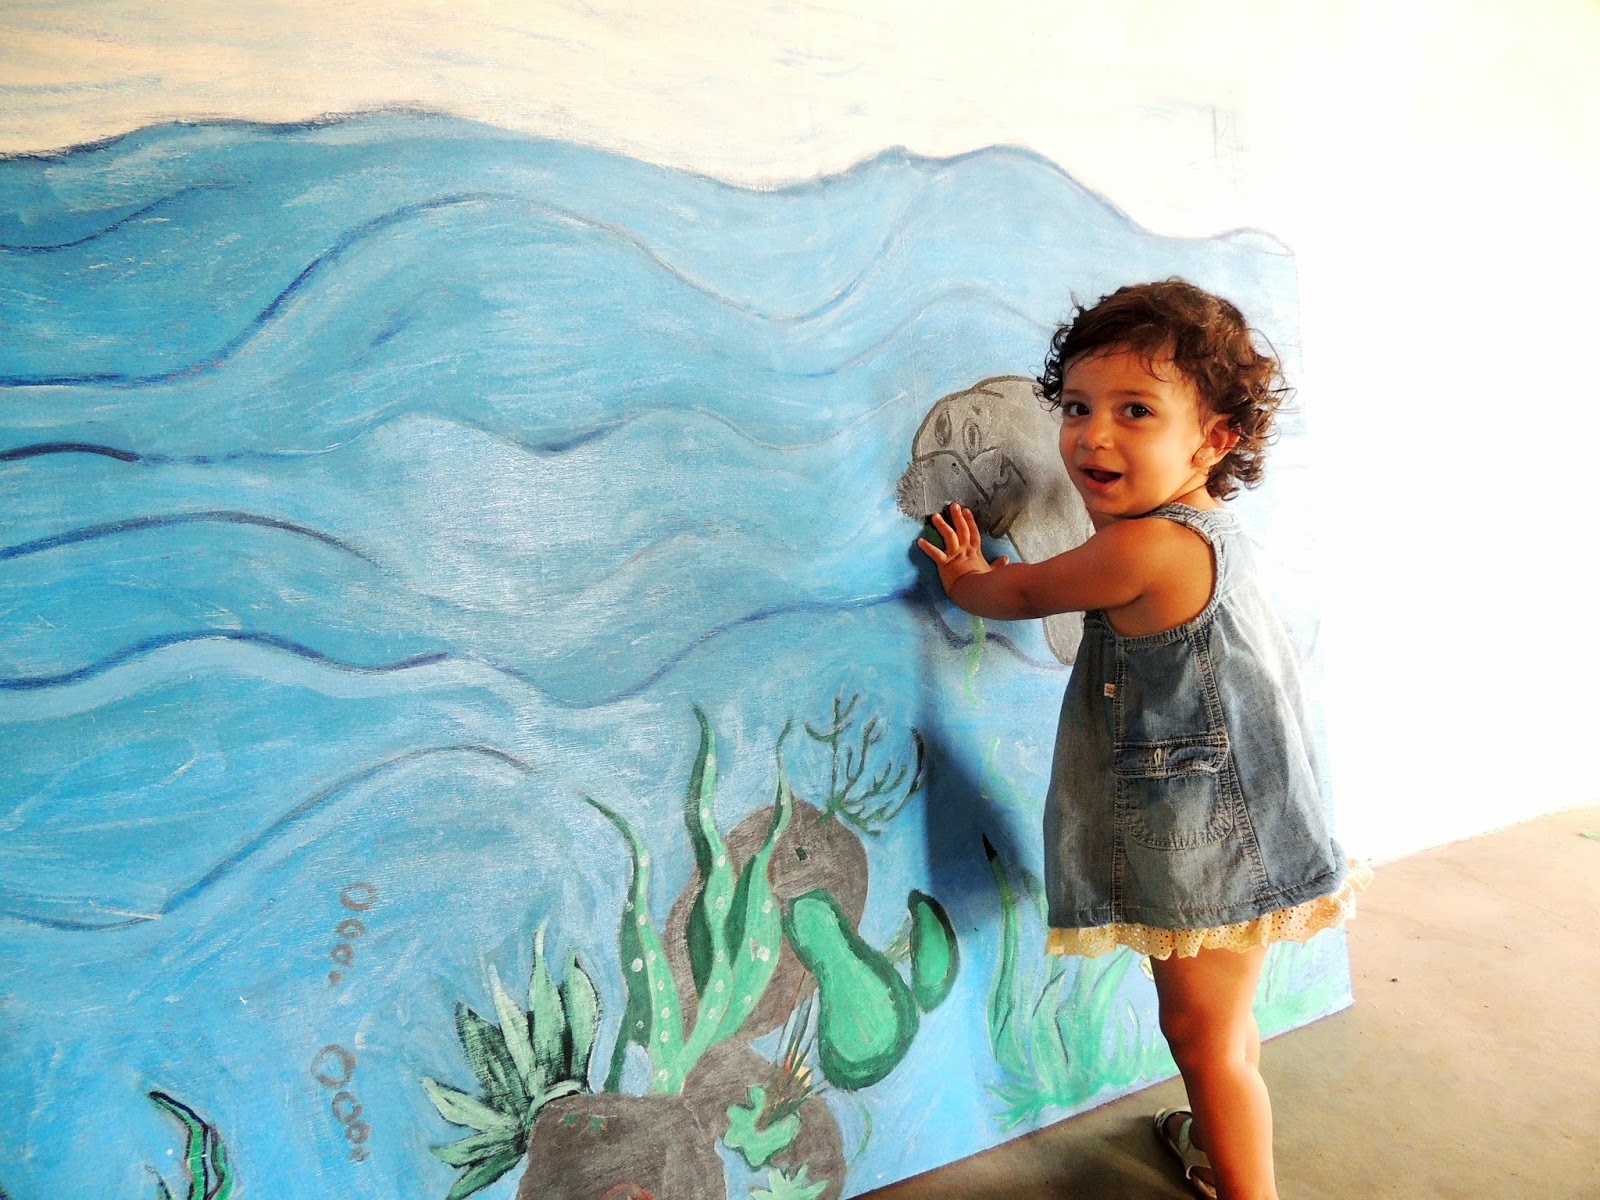 Cine Peixe-Boi promove sessão especial para crianças da Barra de Mamanguape